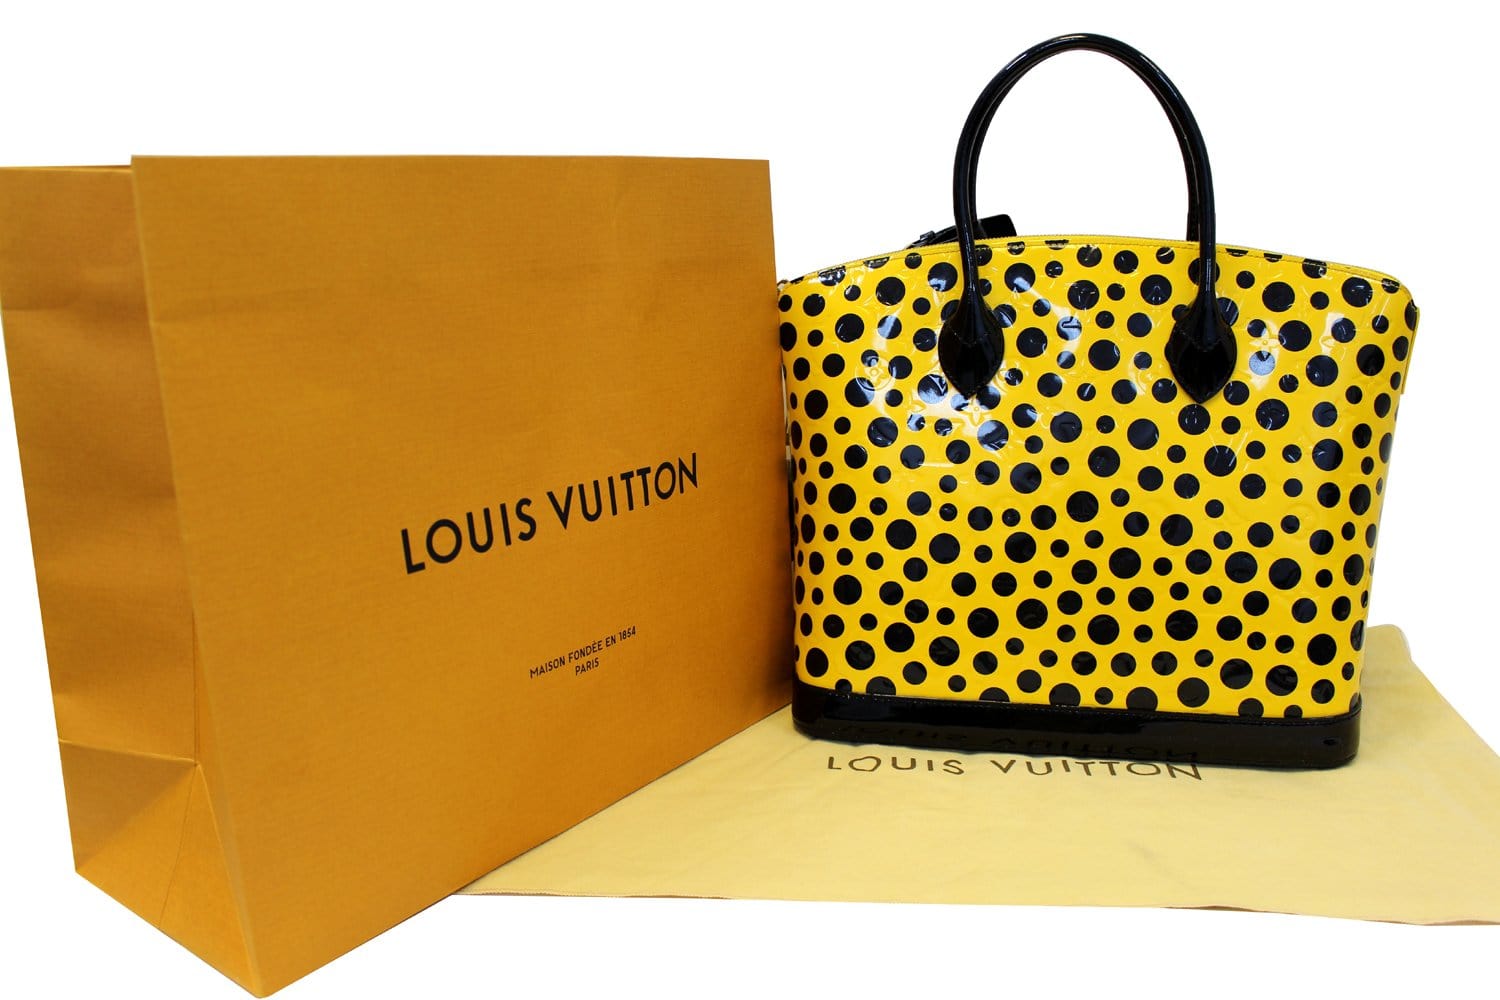 Yayoi Kusama for Louis Vuitton